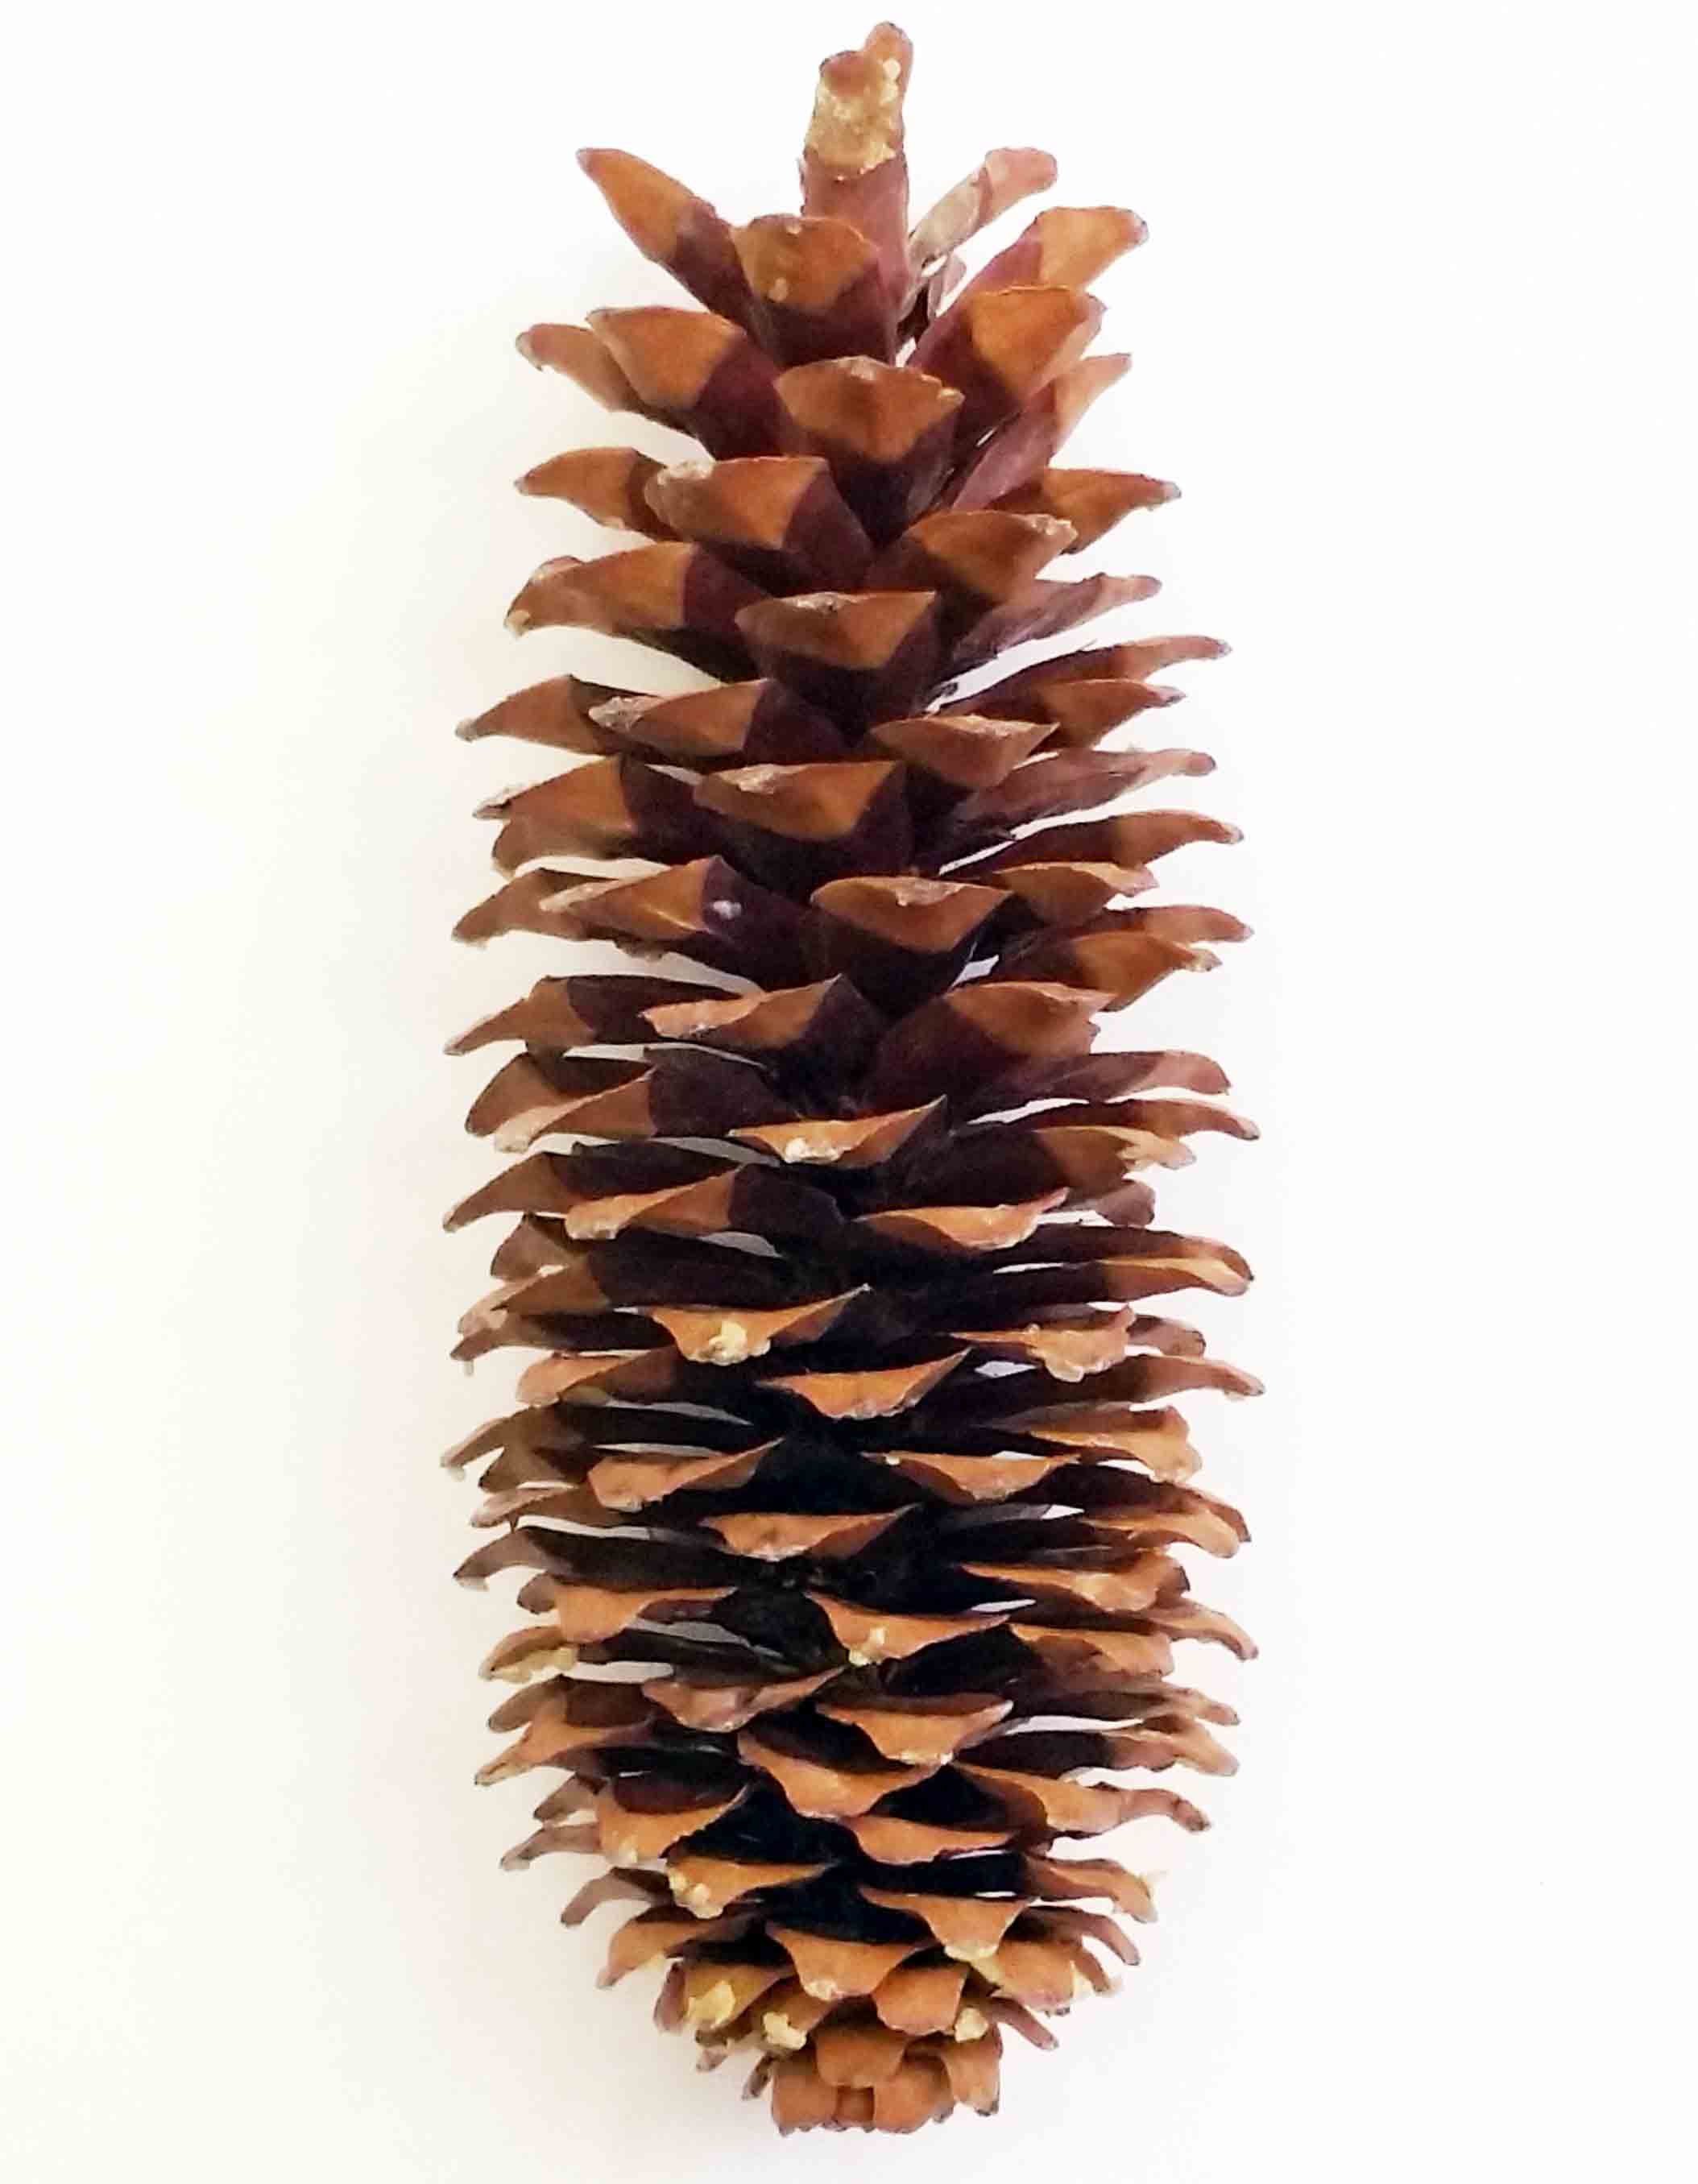 X614 - 10 to 14" Sugar Pine Cones - 7.45 ea, 7.15/12